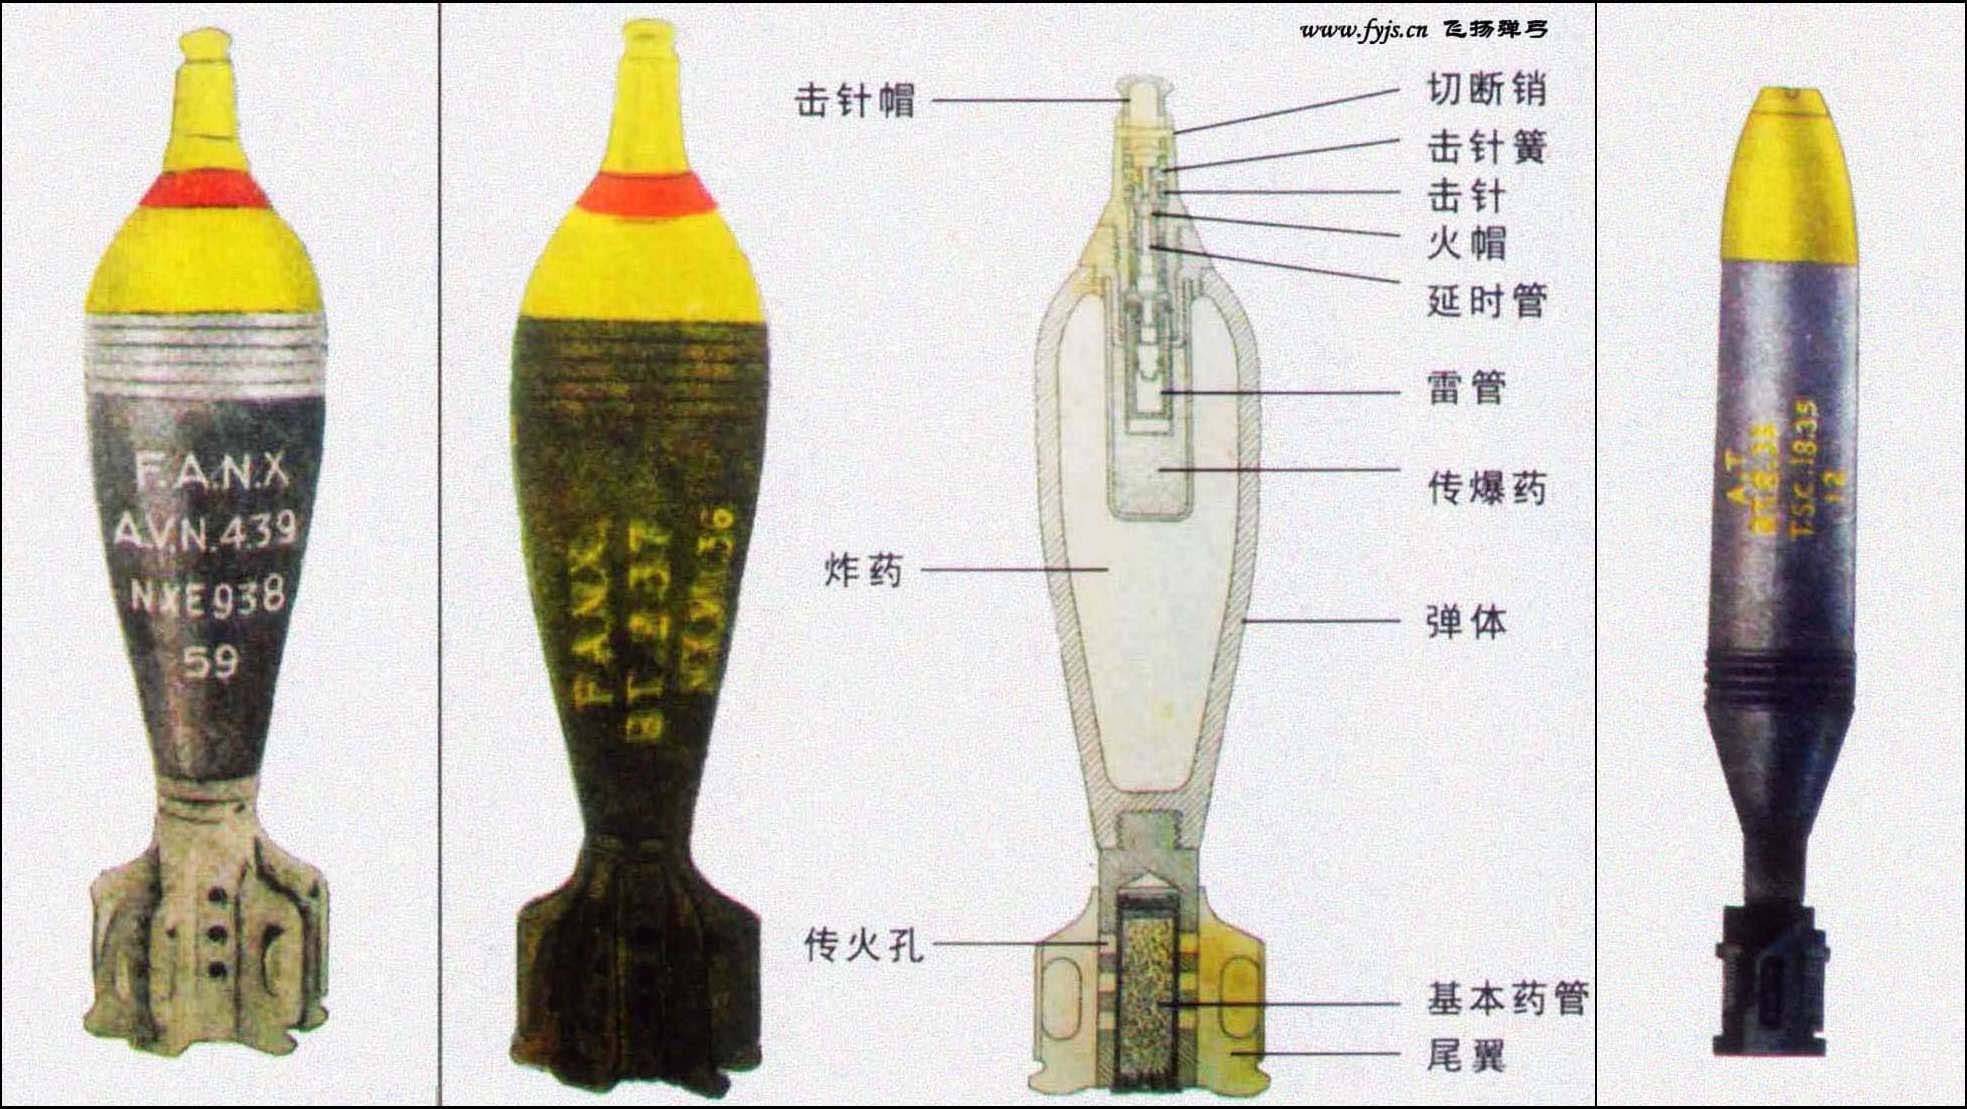 在155远程枣核弹和制导炮弹最昂贵的情况下,迫击炮的炮弹就算最便宜的